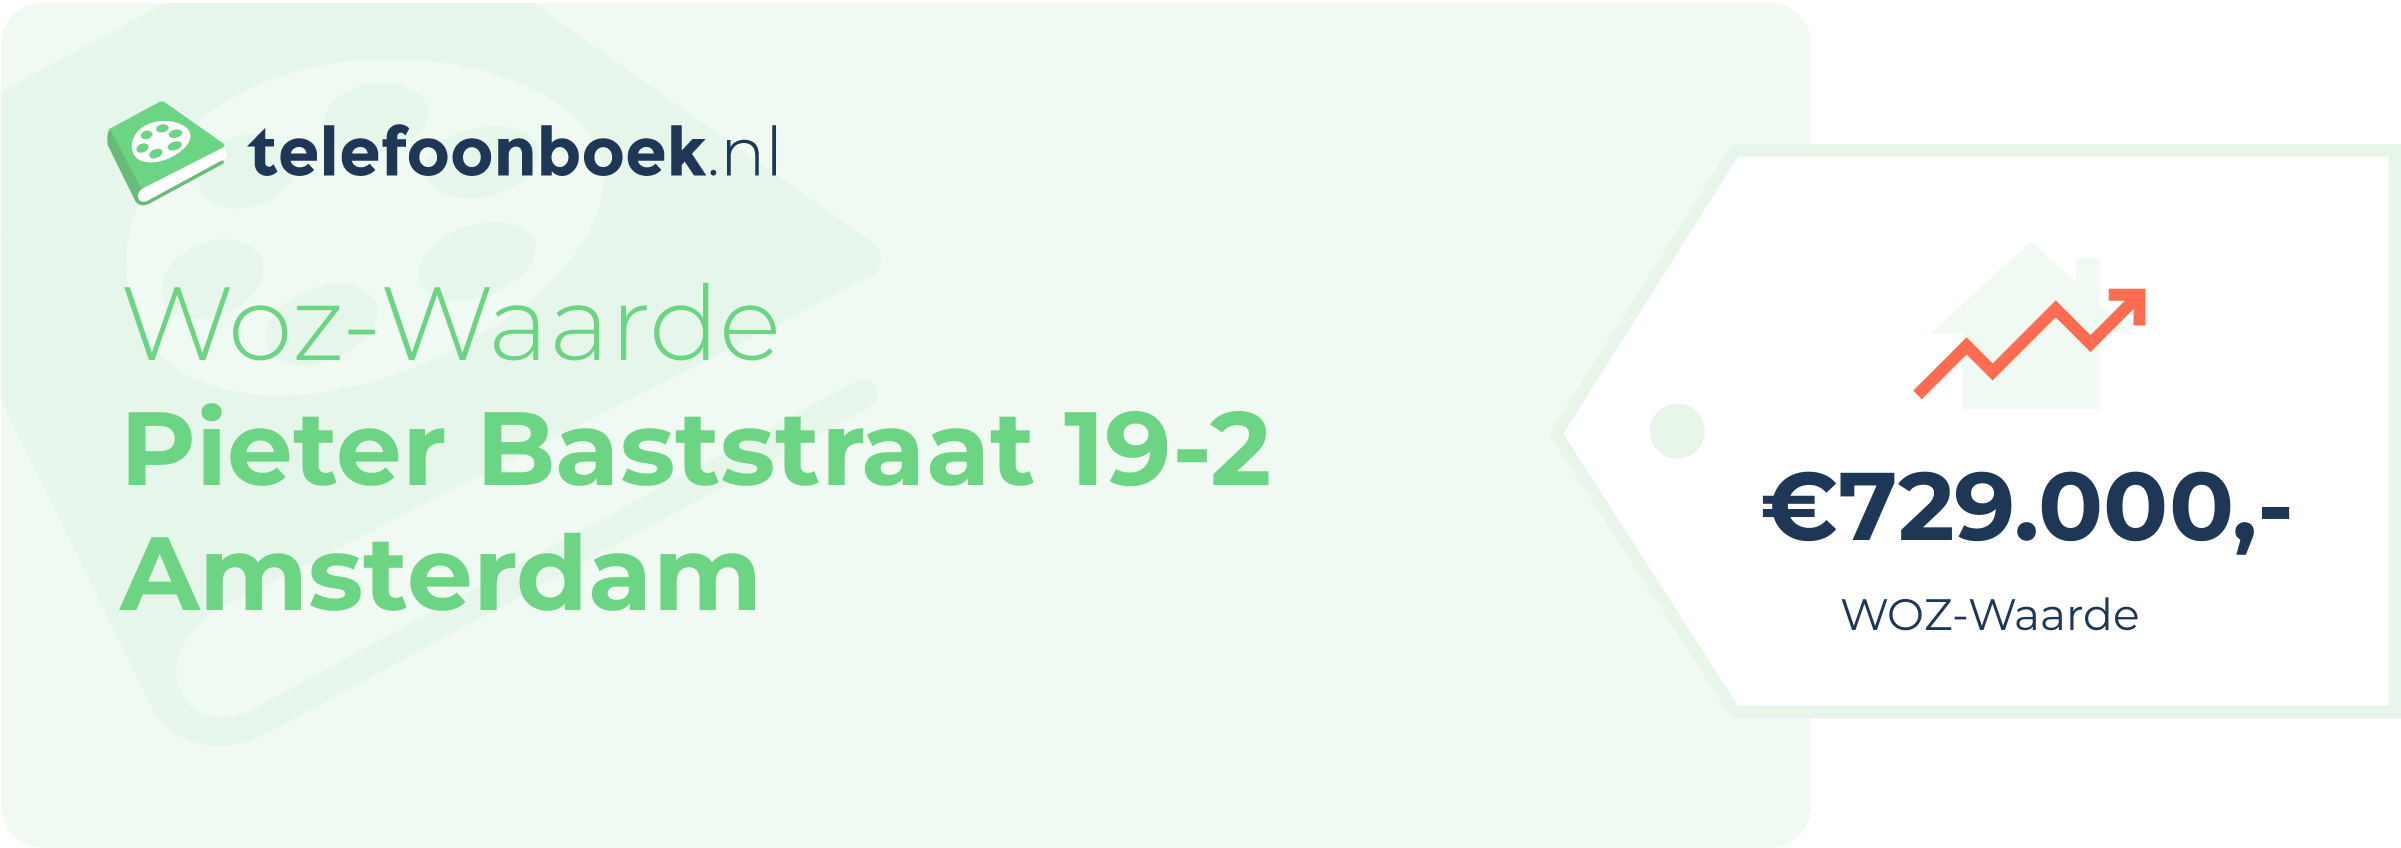 WOZ-waarde Pieter Baststraat 19-2 Amsterdam